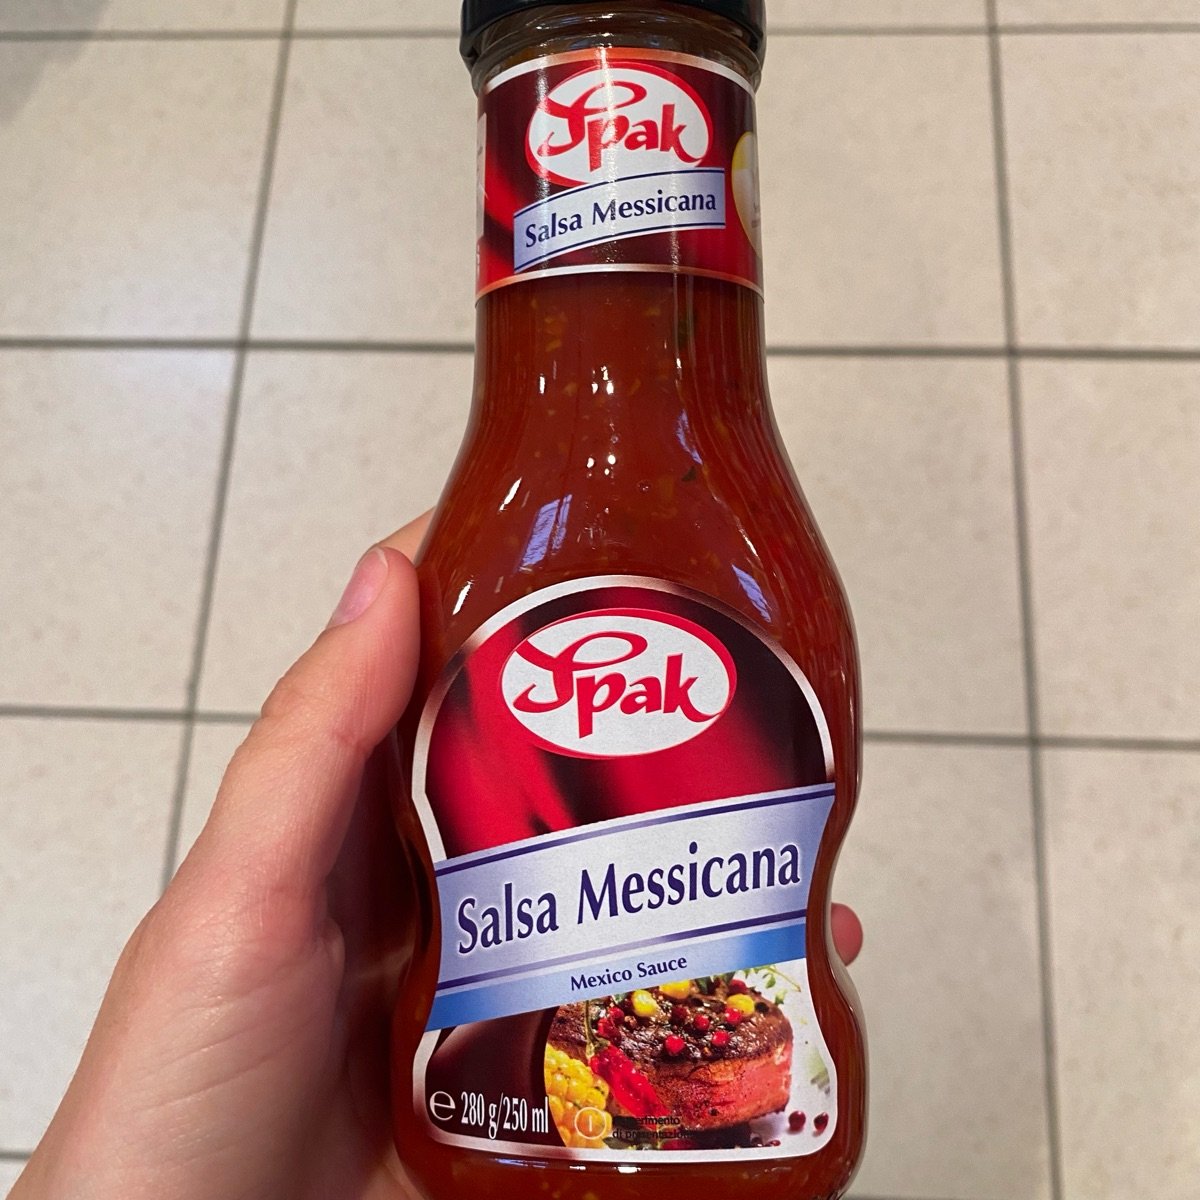 Spak salsa messicana Reviews